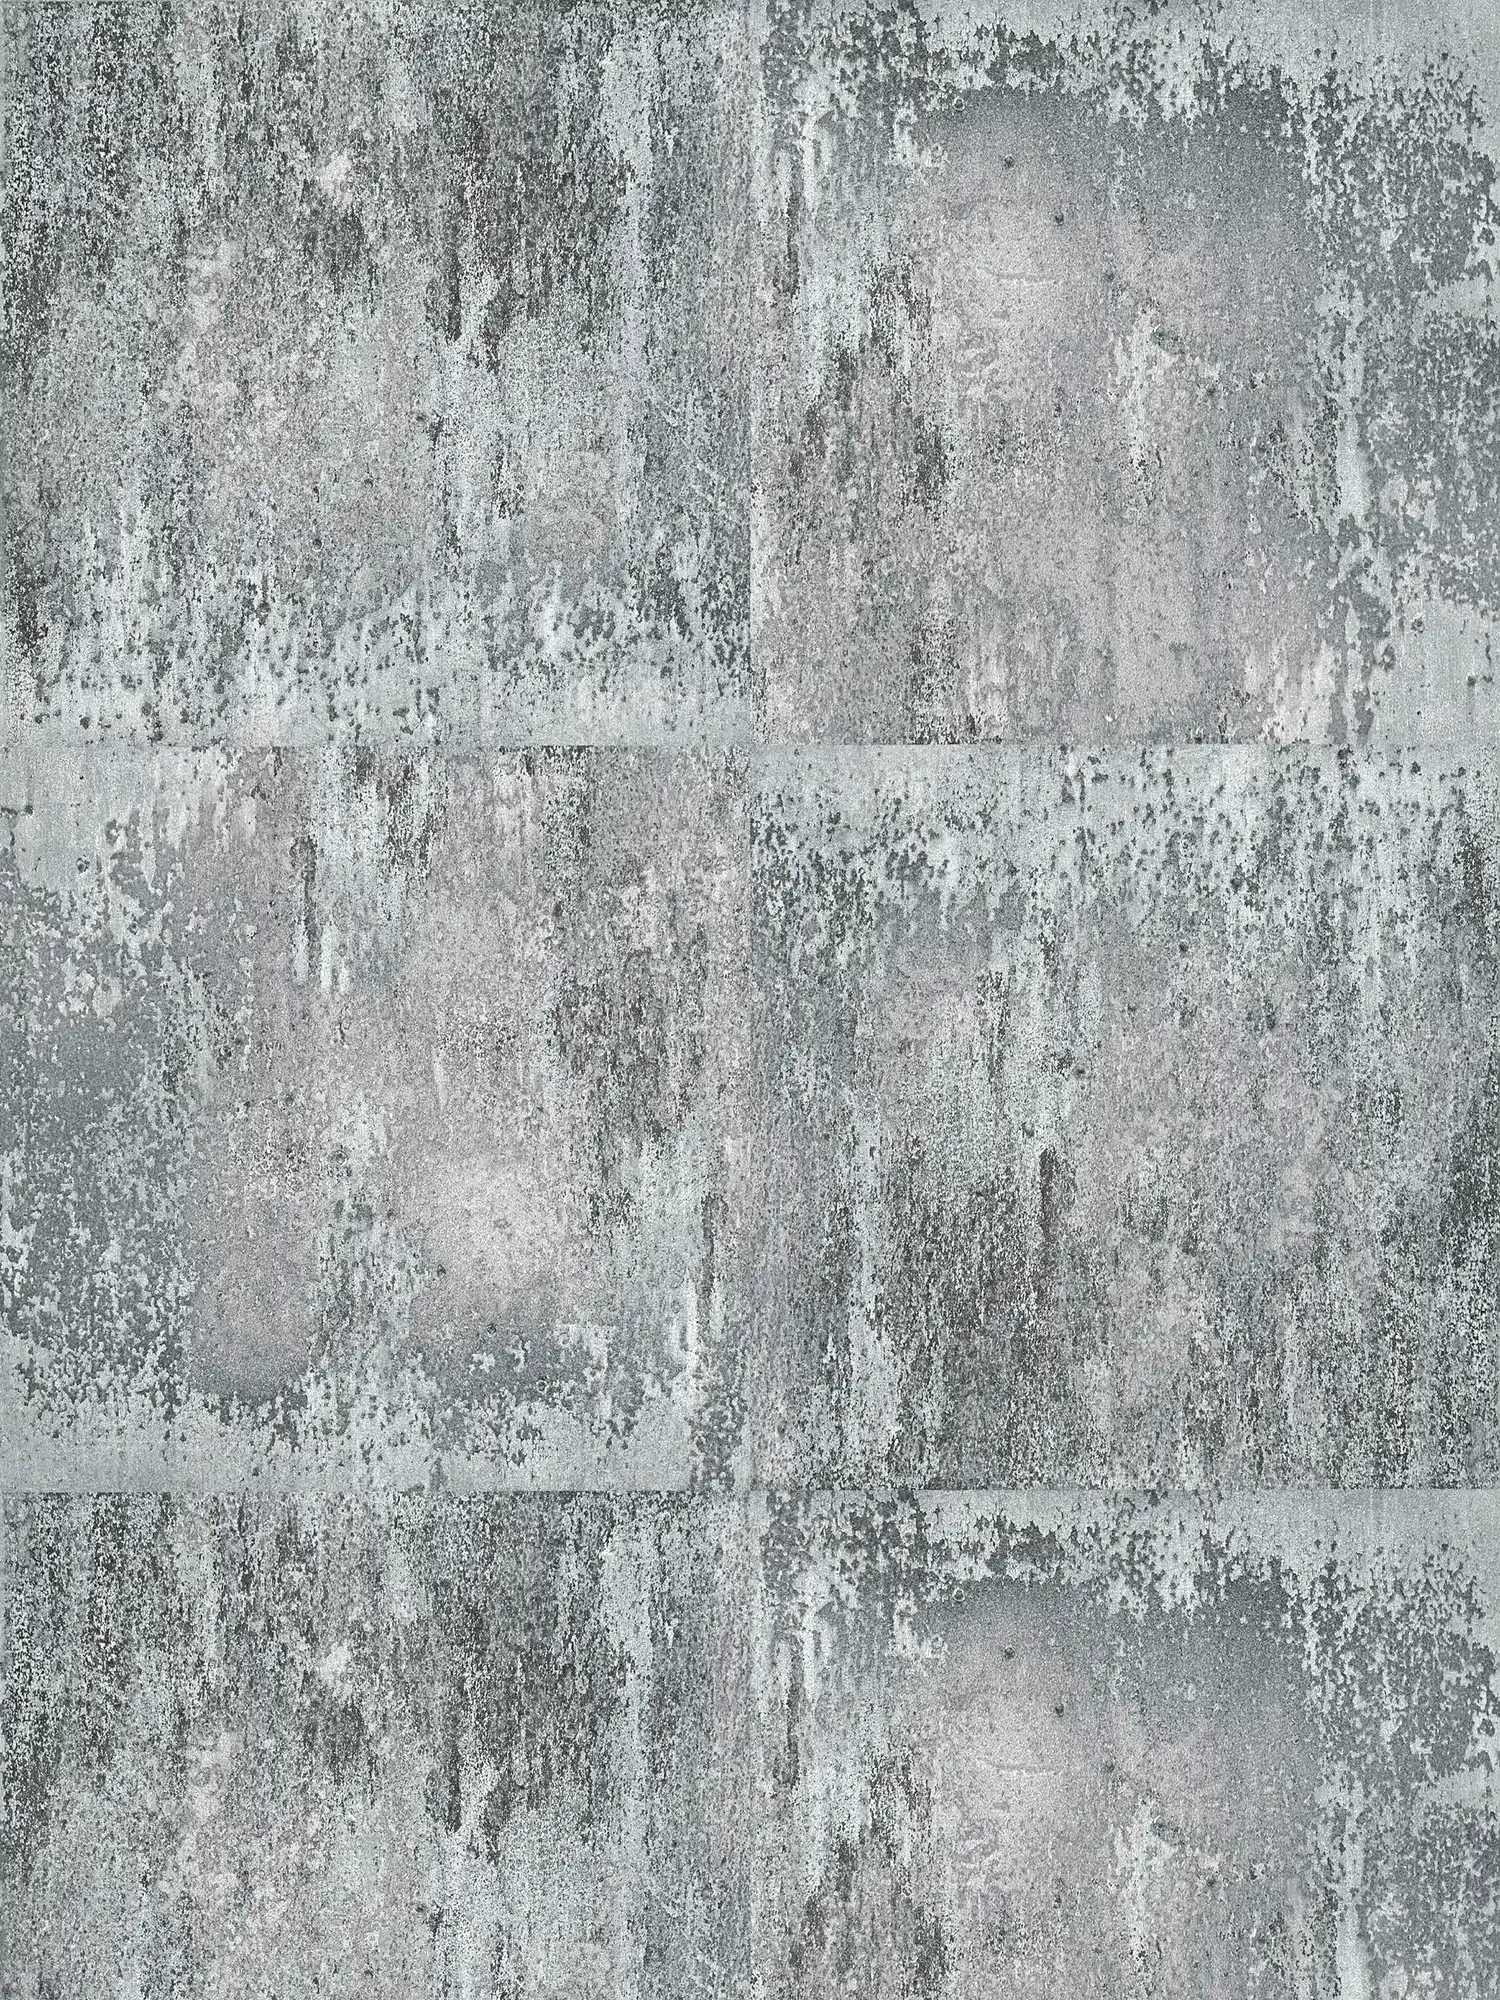 Behang met rustieke metaallook & ruw patroon - grijs, zwart, zilver
